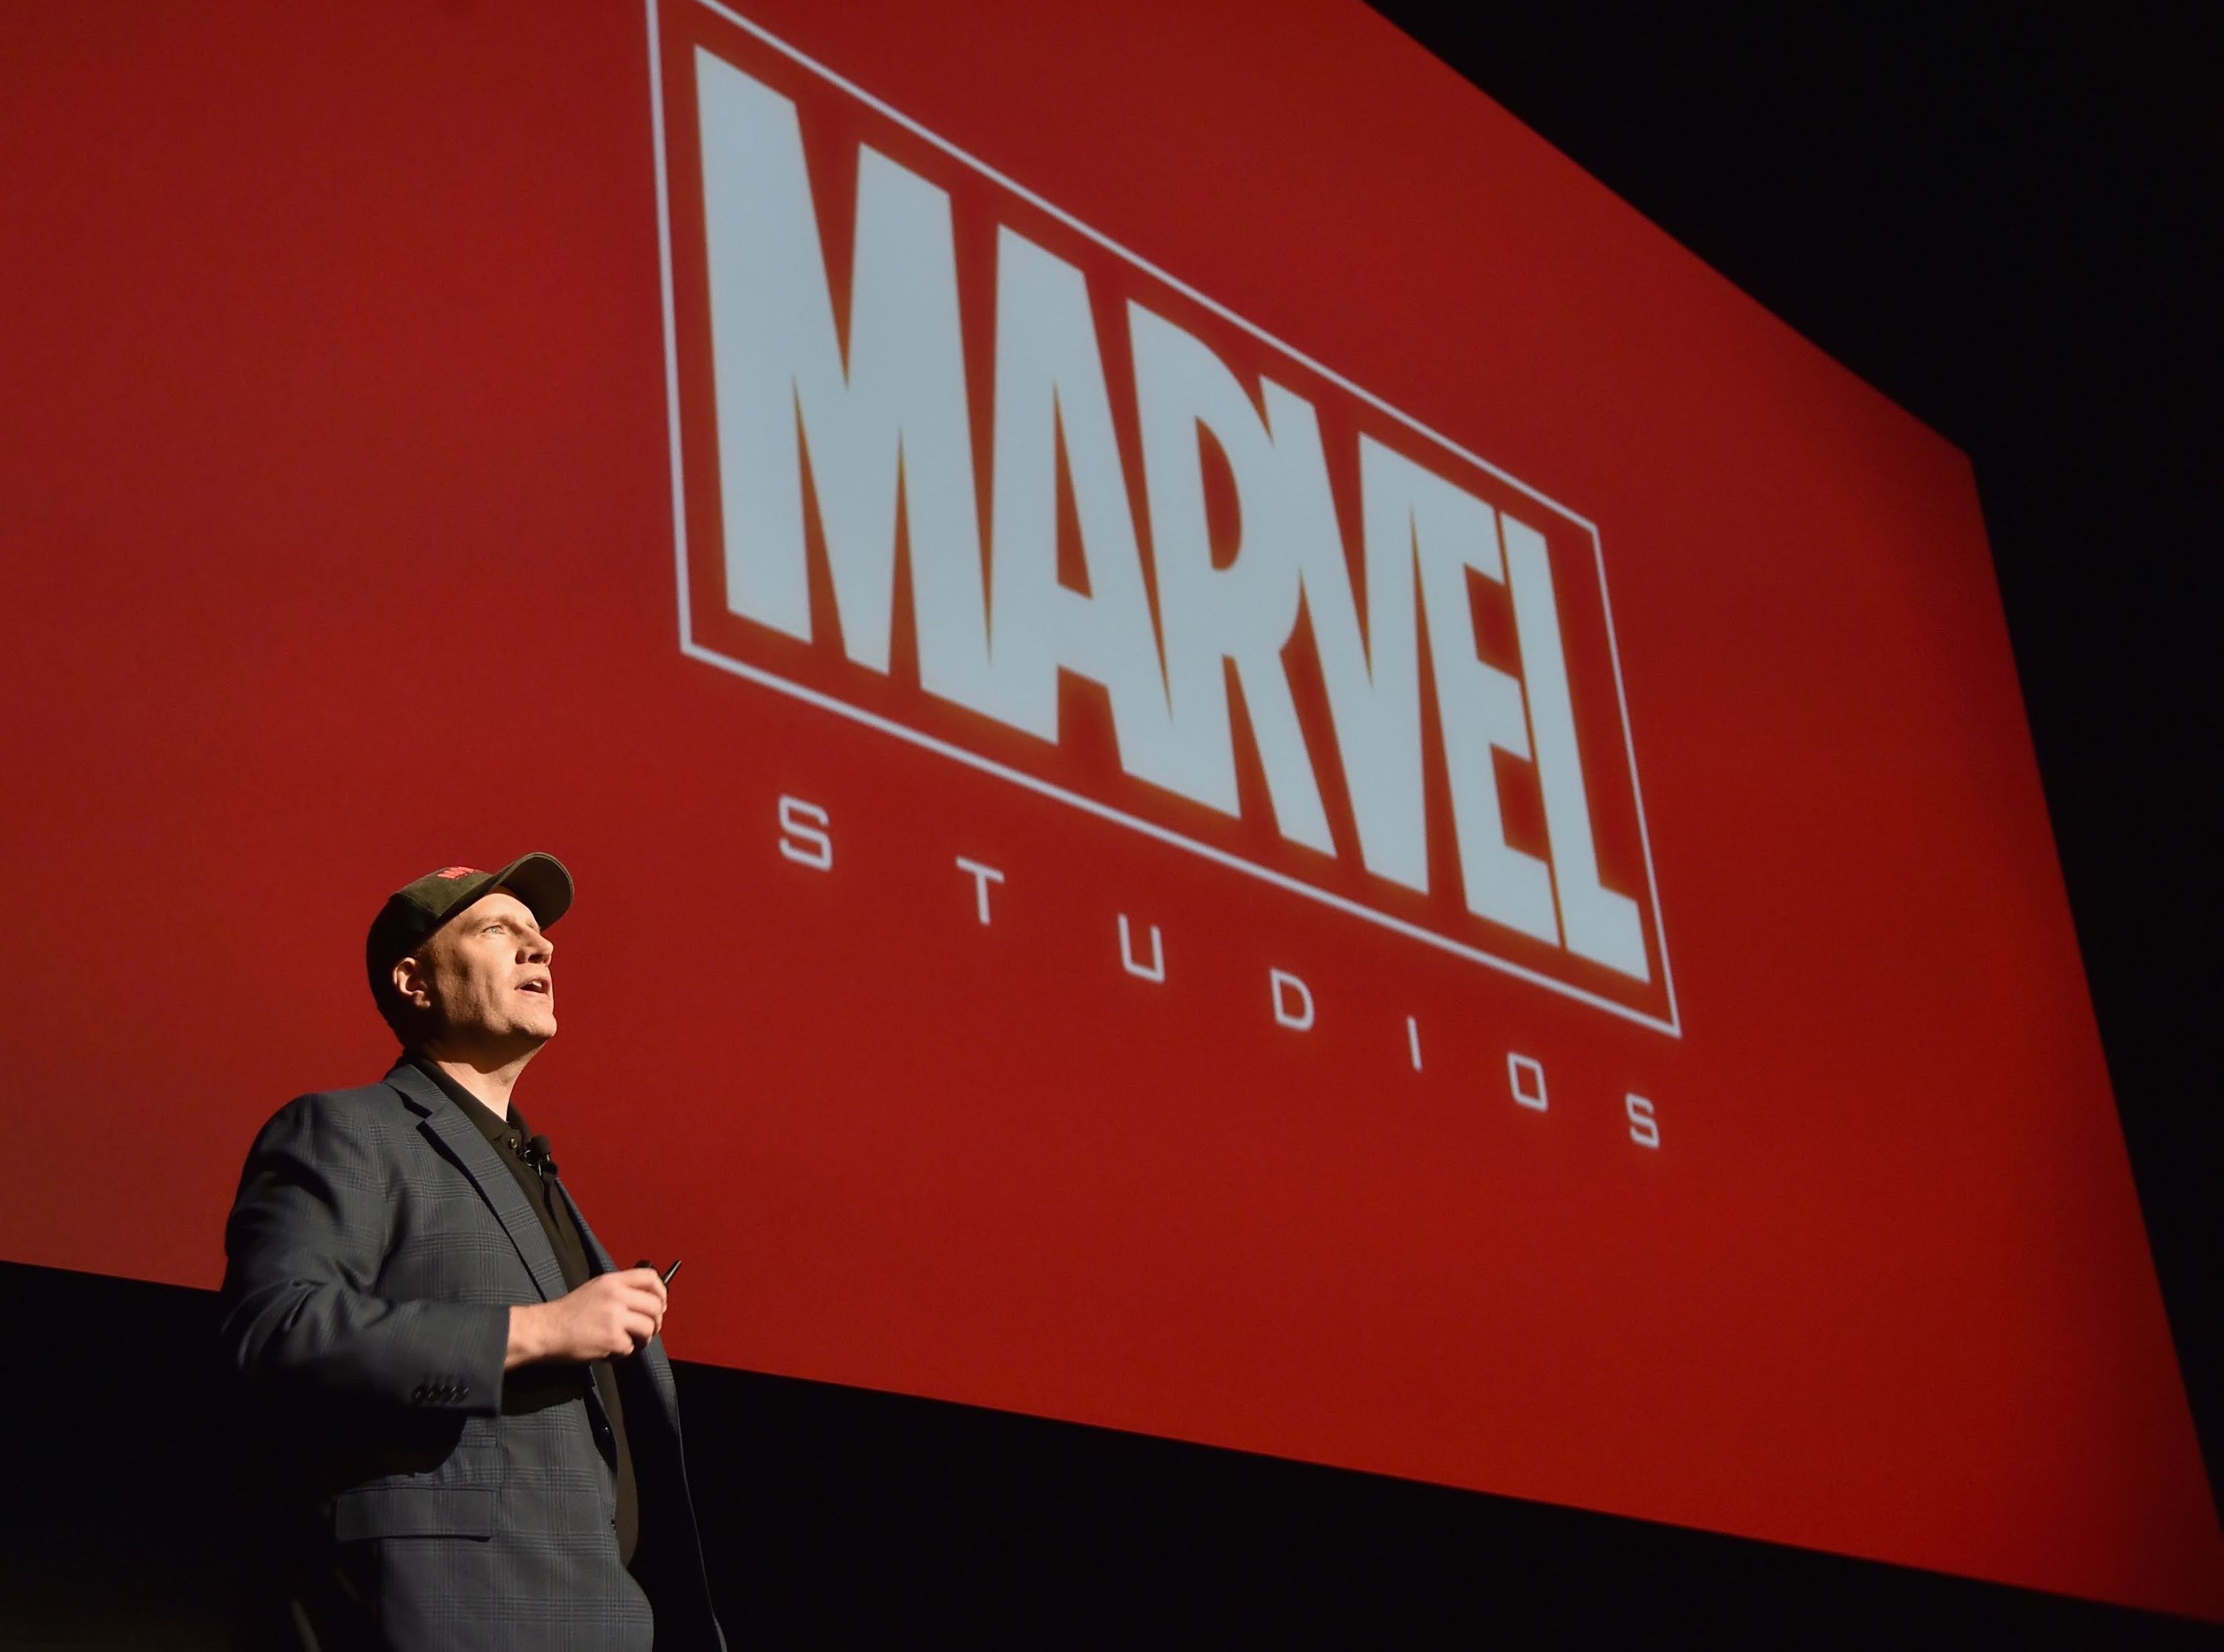 Marvel Studios President Kevin Feige